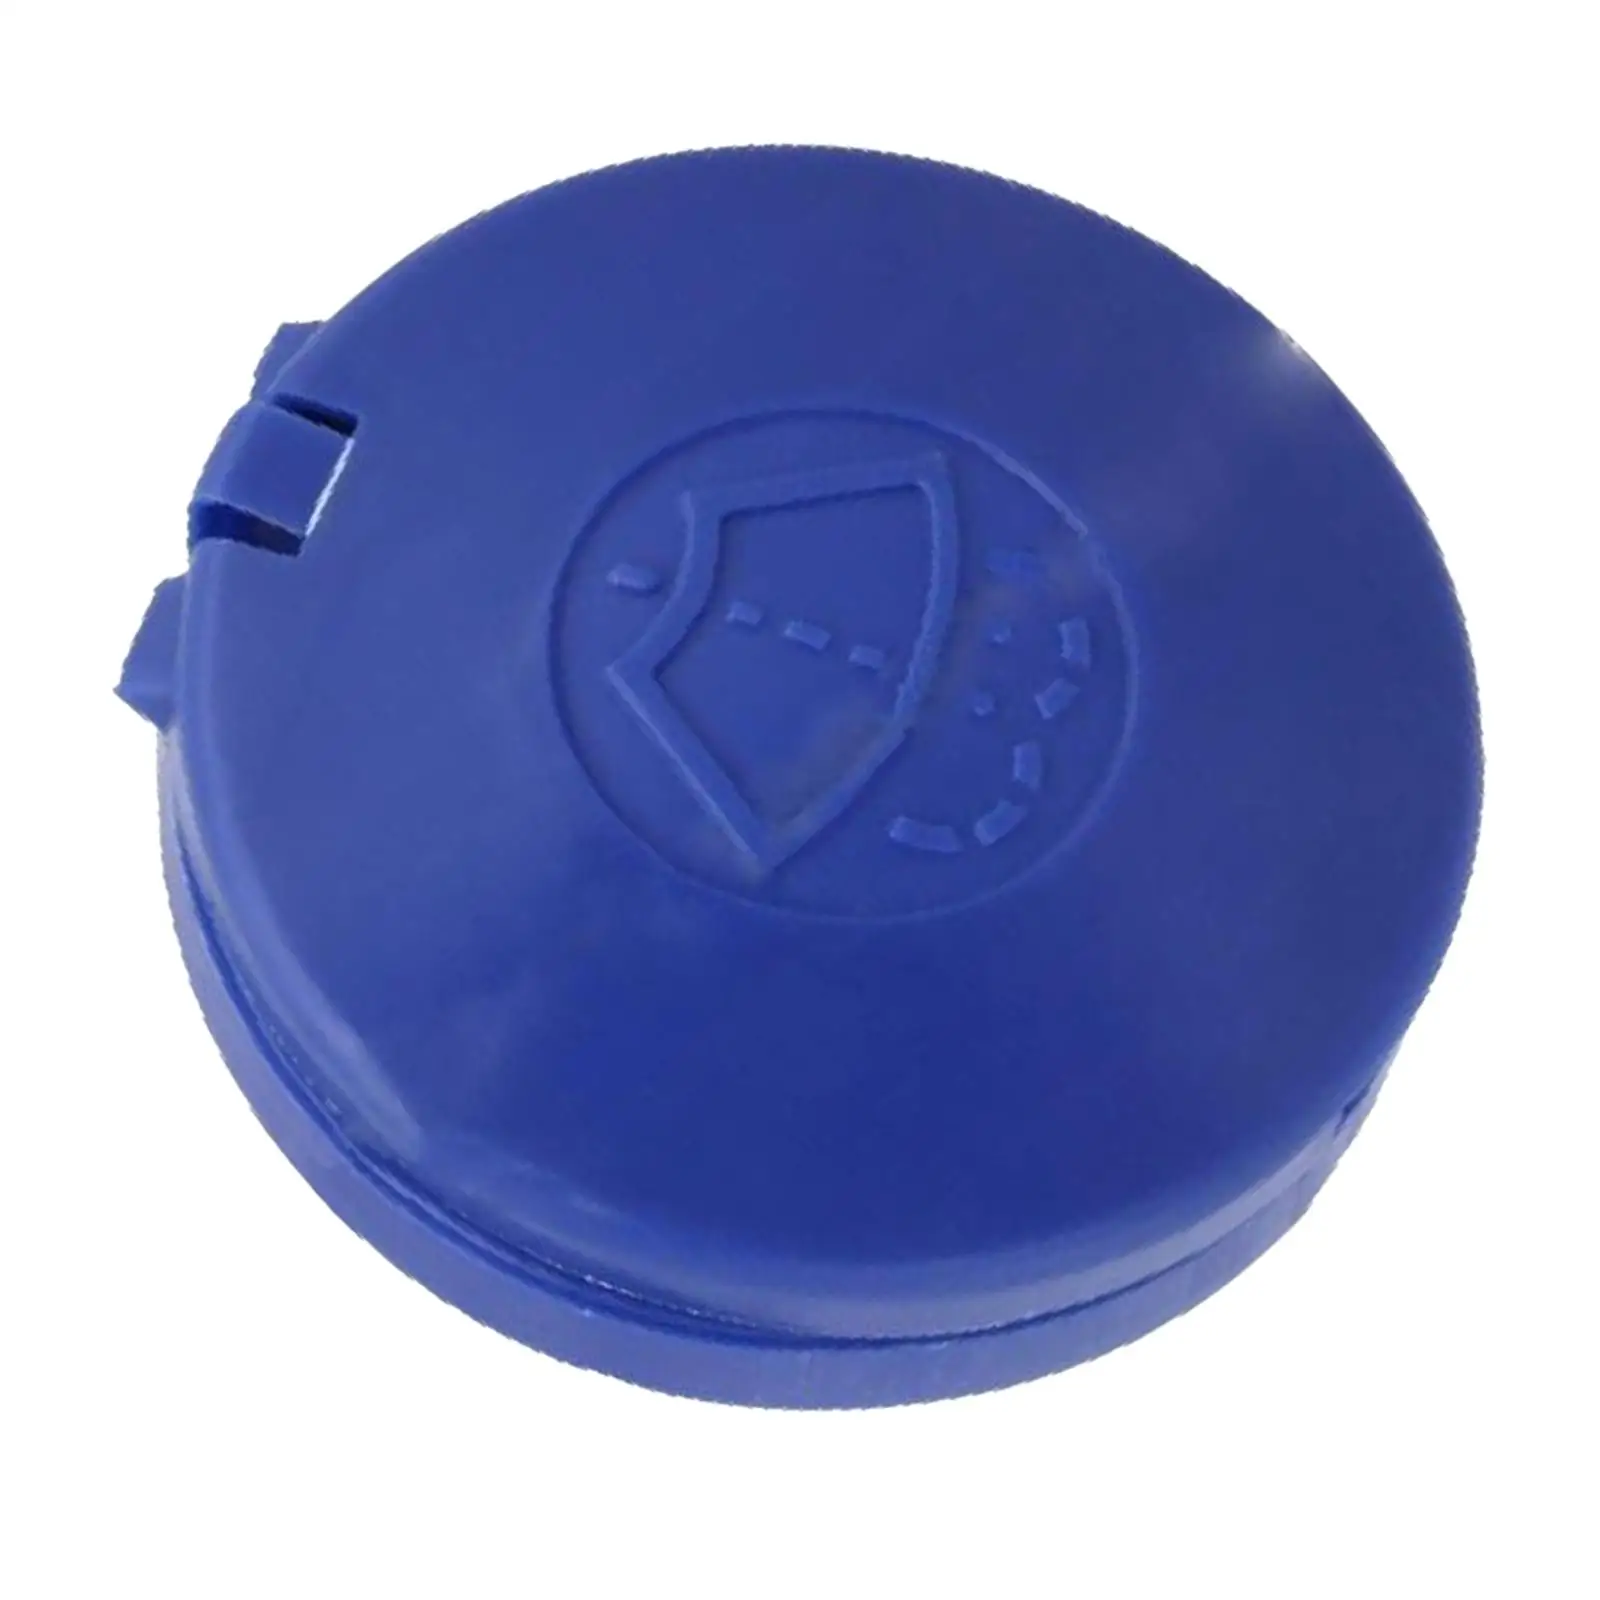 643238 Washer Fluid Bottle Cap 45mm Durable for Citroen C4 Replaces